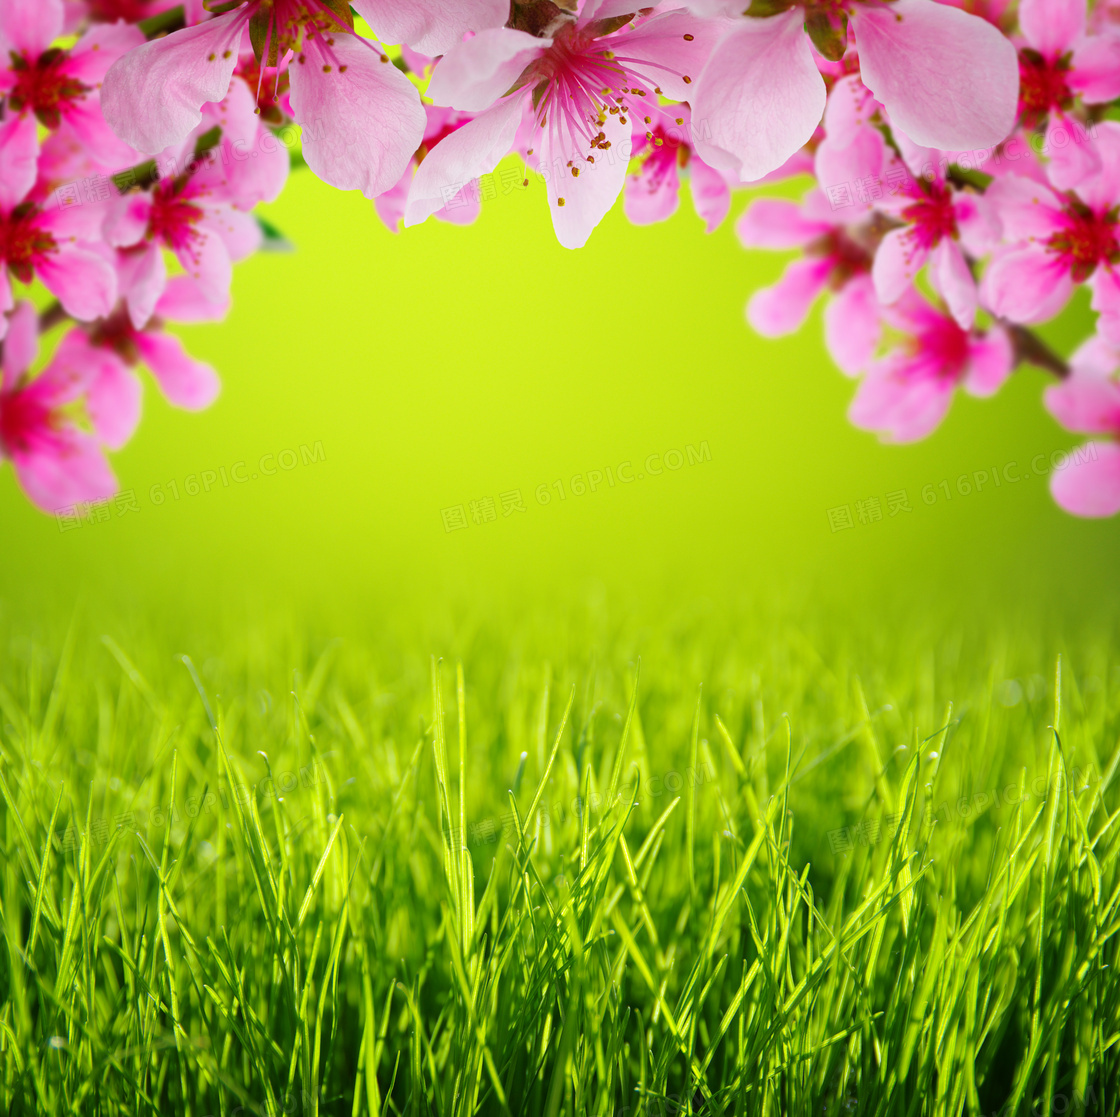 青青草与粉红色的花朵摄影高清图片